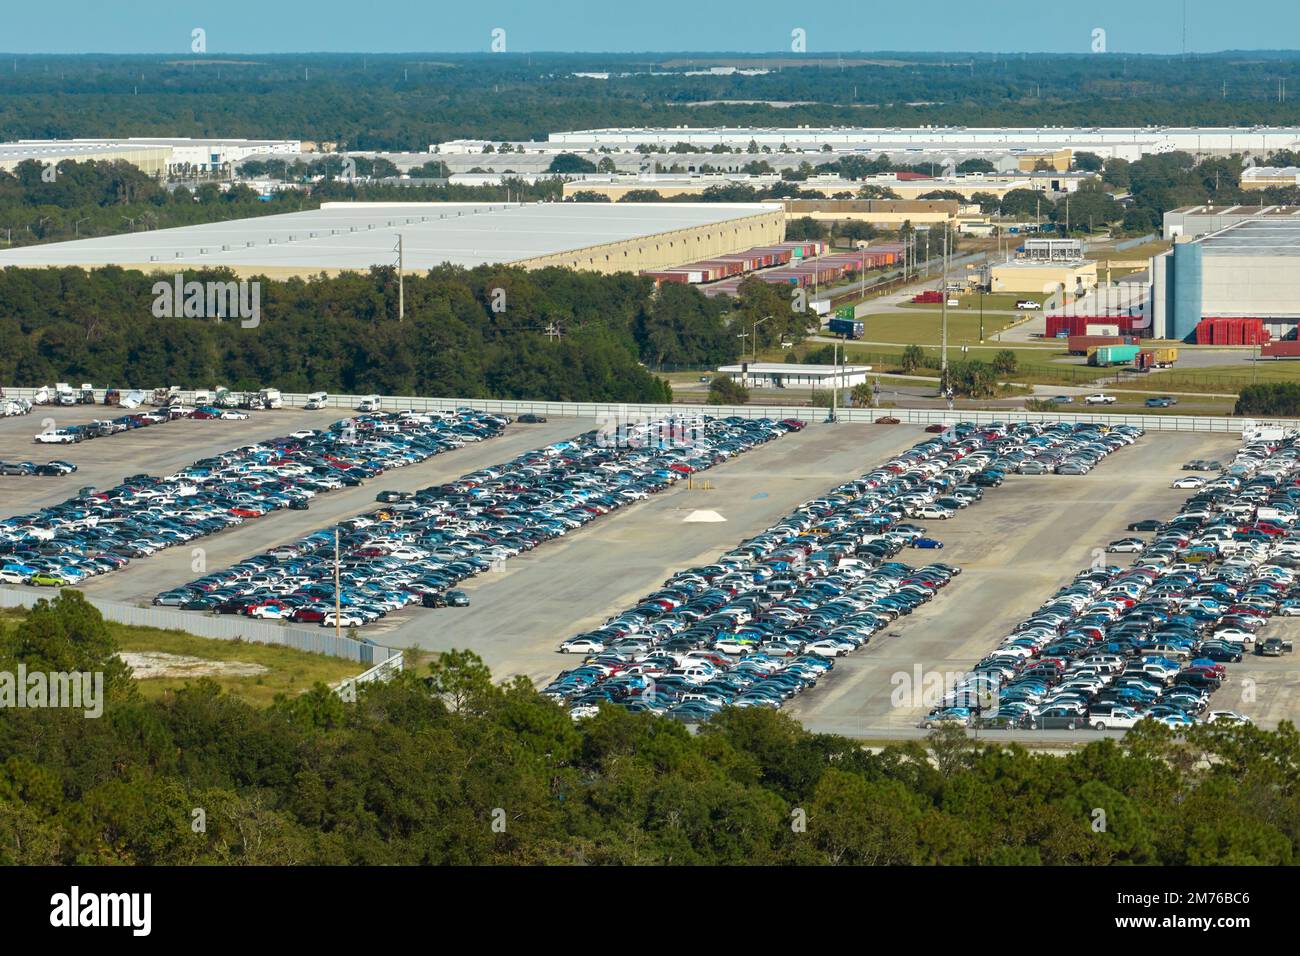 Luftaufnahme des großen Parkplatzes des Auktionshändlers mit geparkten Autos, die für Remarketing-Services bereit sind. Verkauf von Gebrauchtfahrzeugen Stockfoto